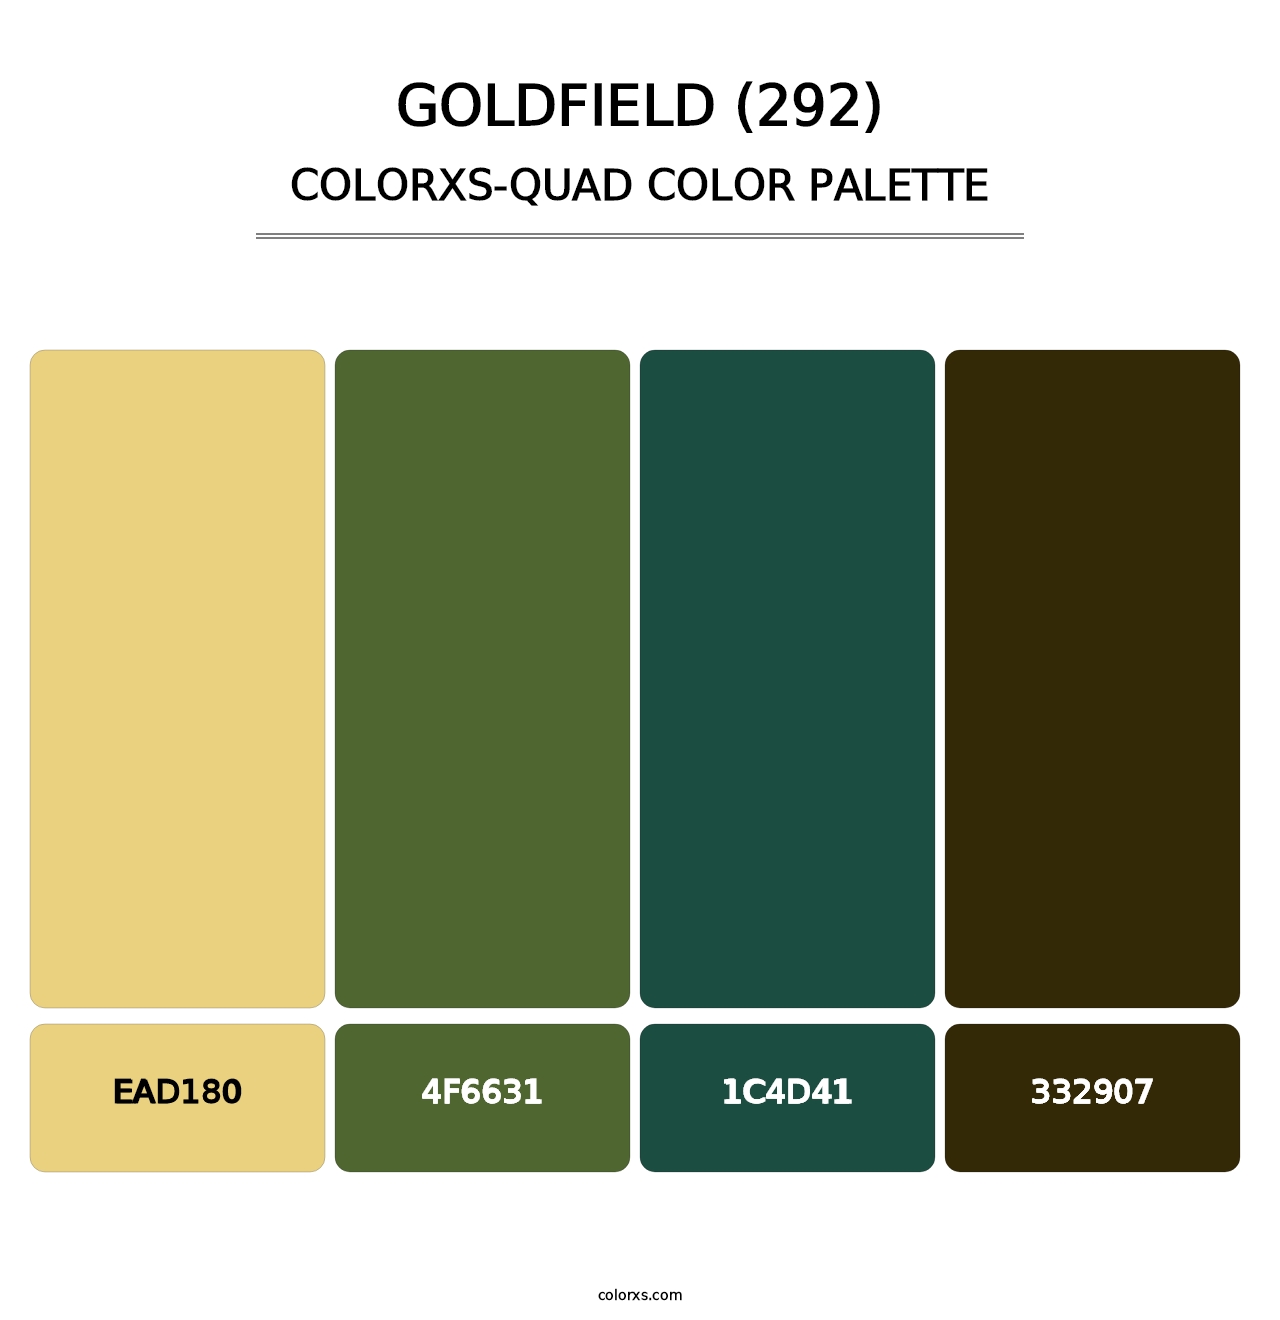 Goldfield (292) - Colorxs Quad Palette